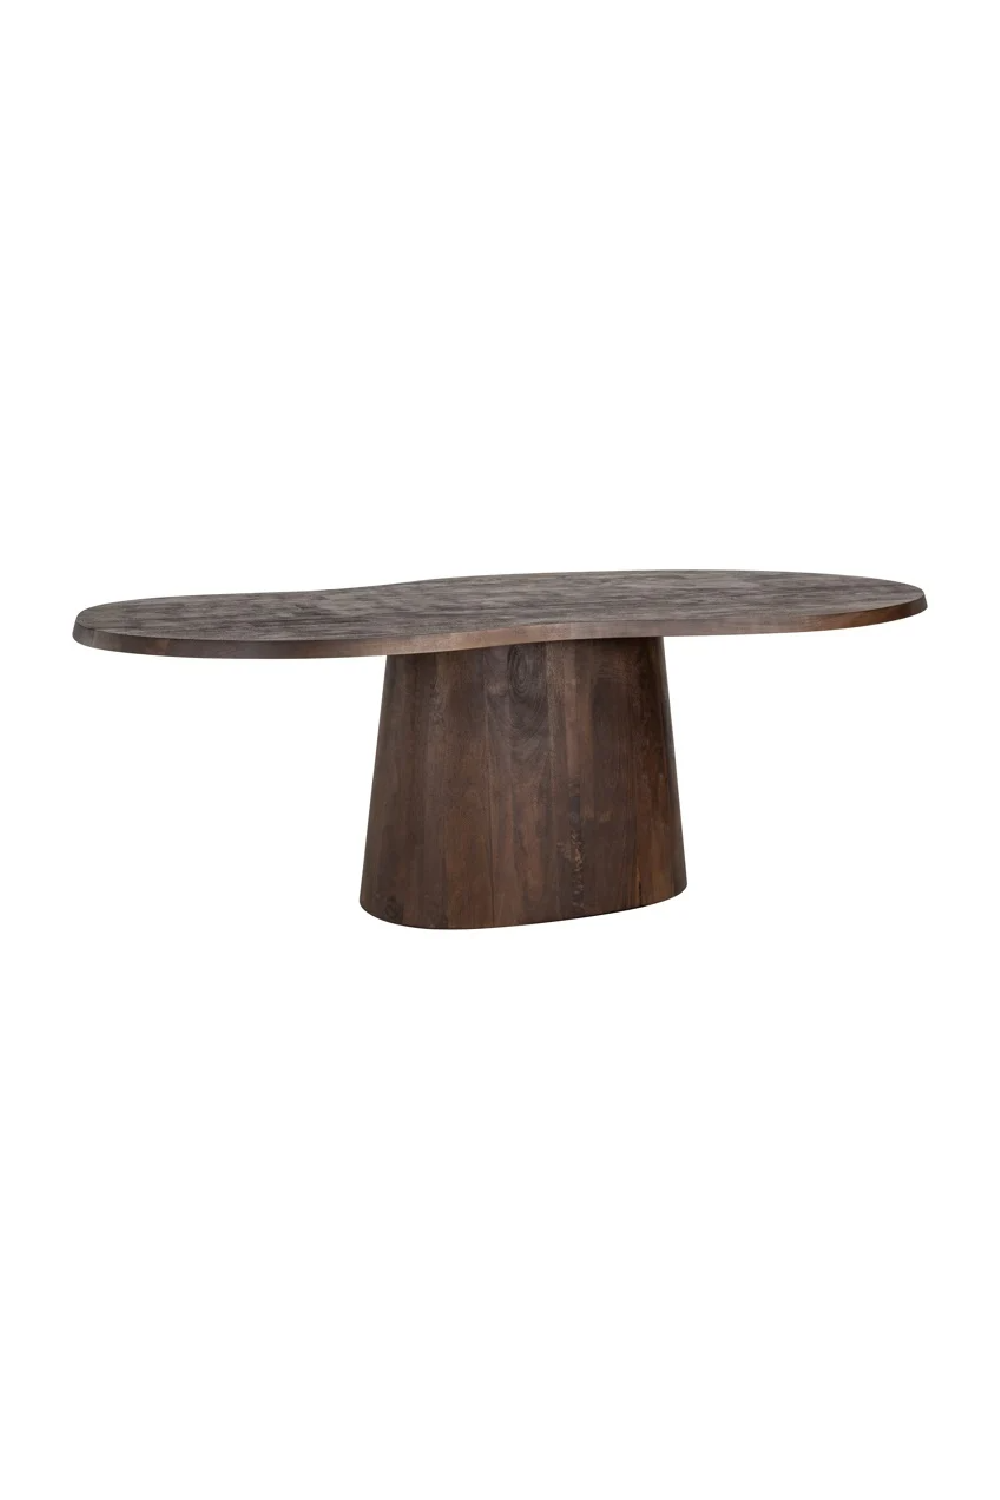 Wooden Organic-Shaped Dining Table | OROA Odile | Oroa.com